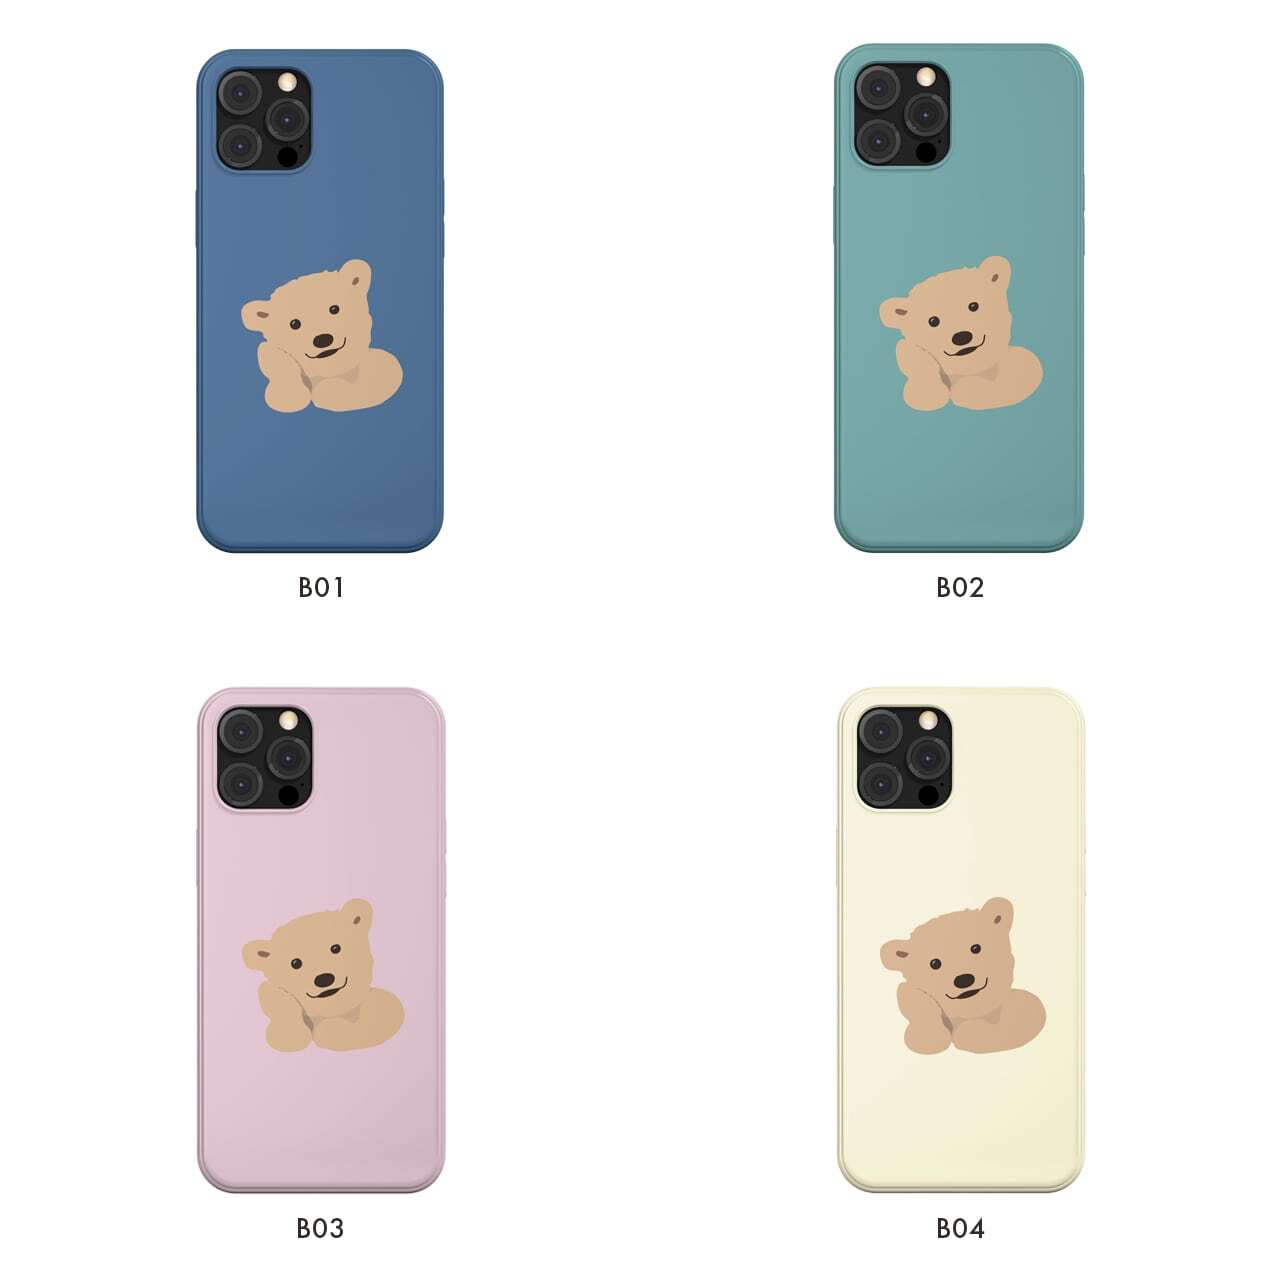 韓国 スマホケース Bear かわいい くま イラスト キャラクター デザイナーズ Iphone Android 携帯カバー 熊 ベアー クマ グリーン B02 韓国スマホケース専門店 Korean Case